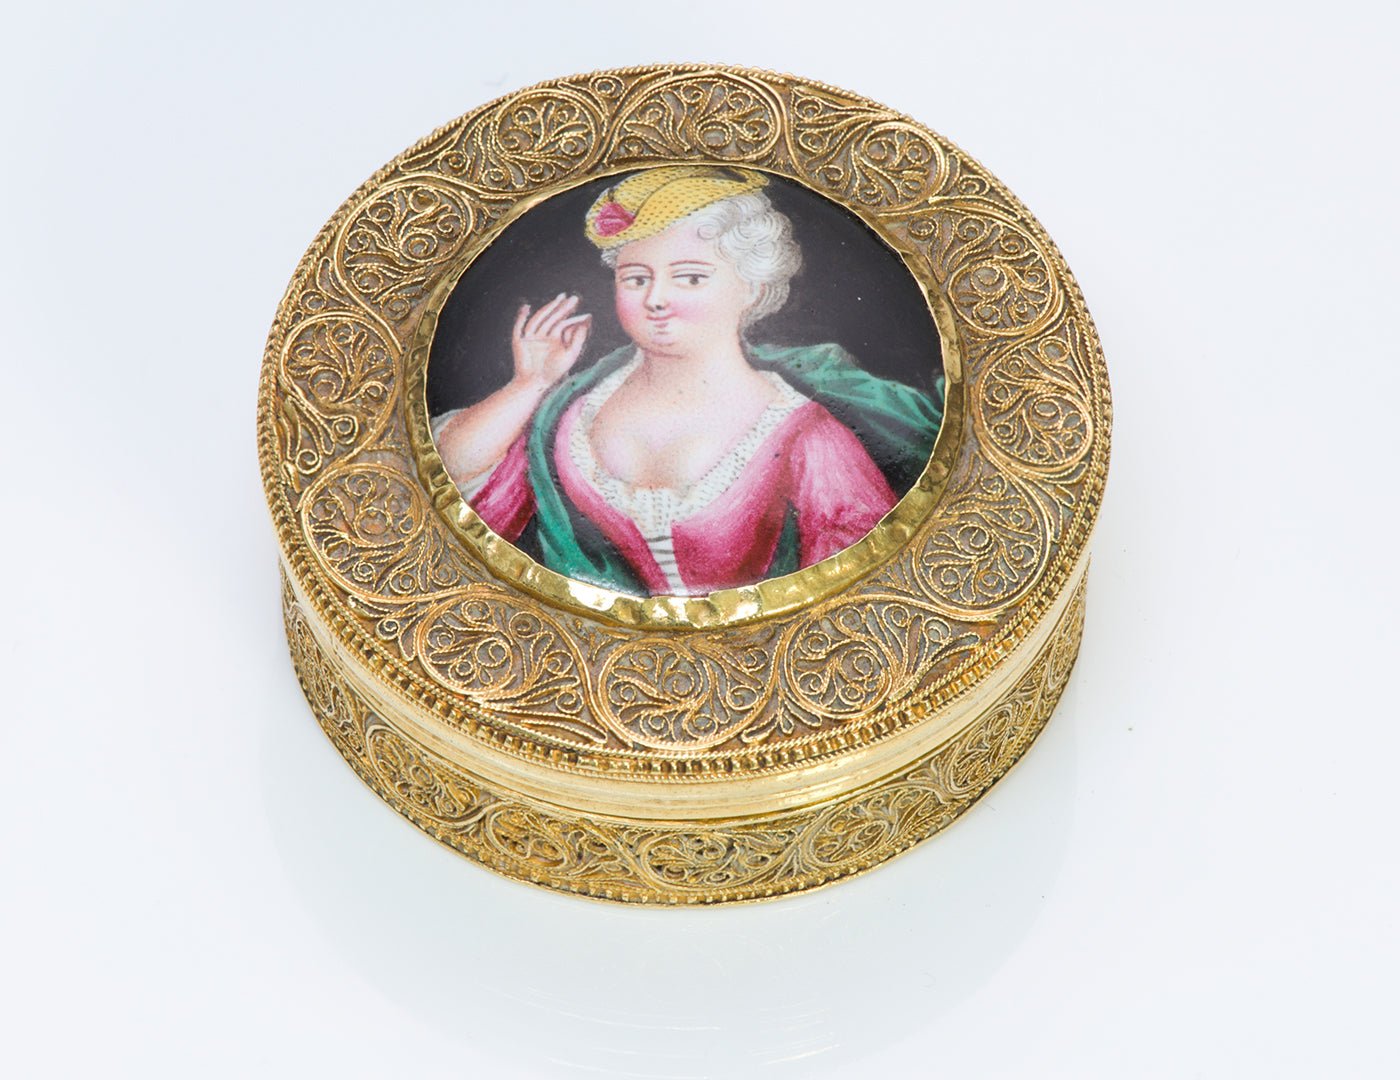 Antique Filigree Gold Box with Painted Portrait Porcelain Miniature